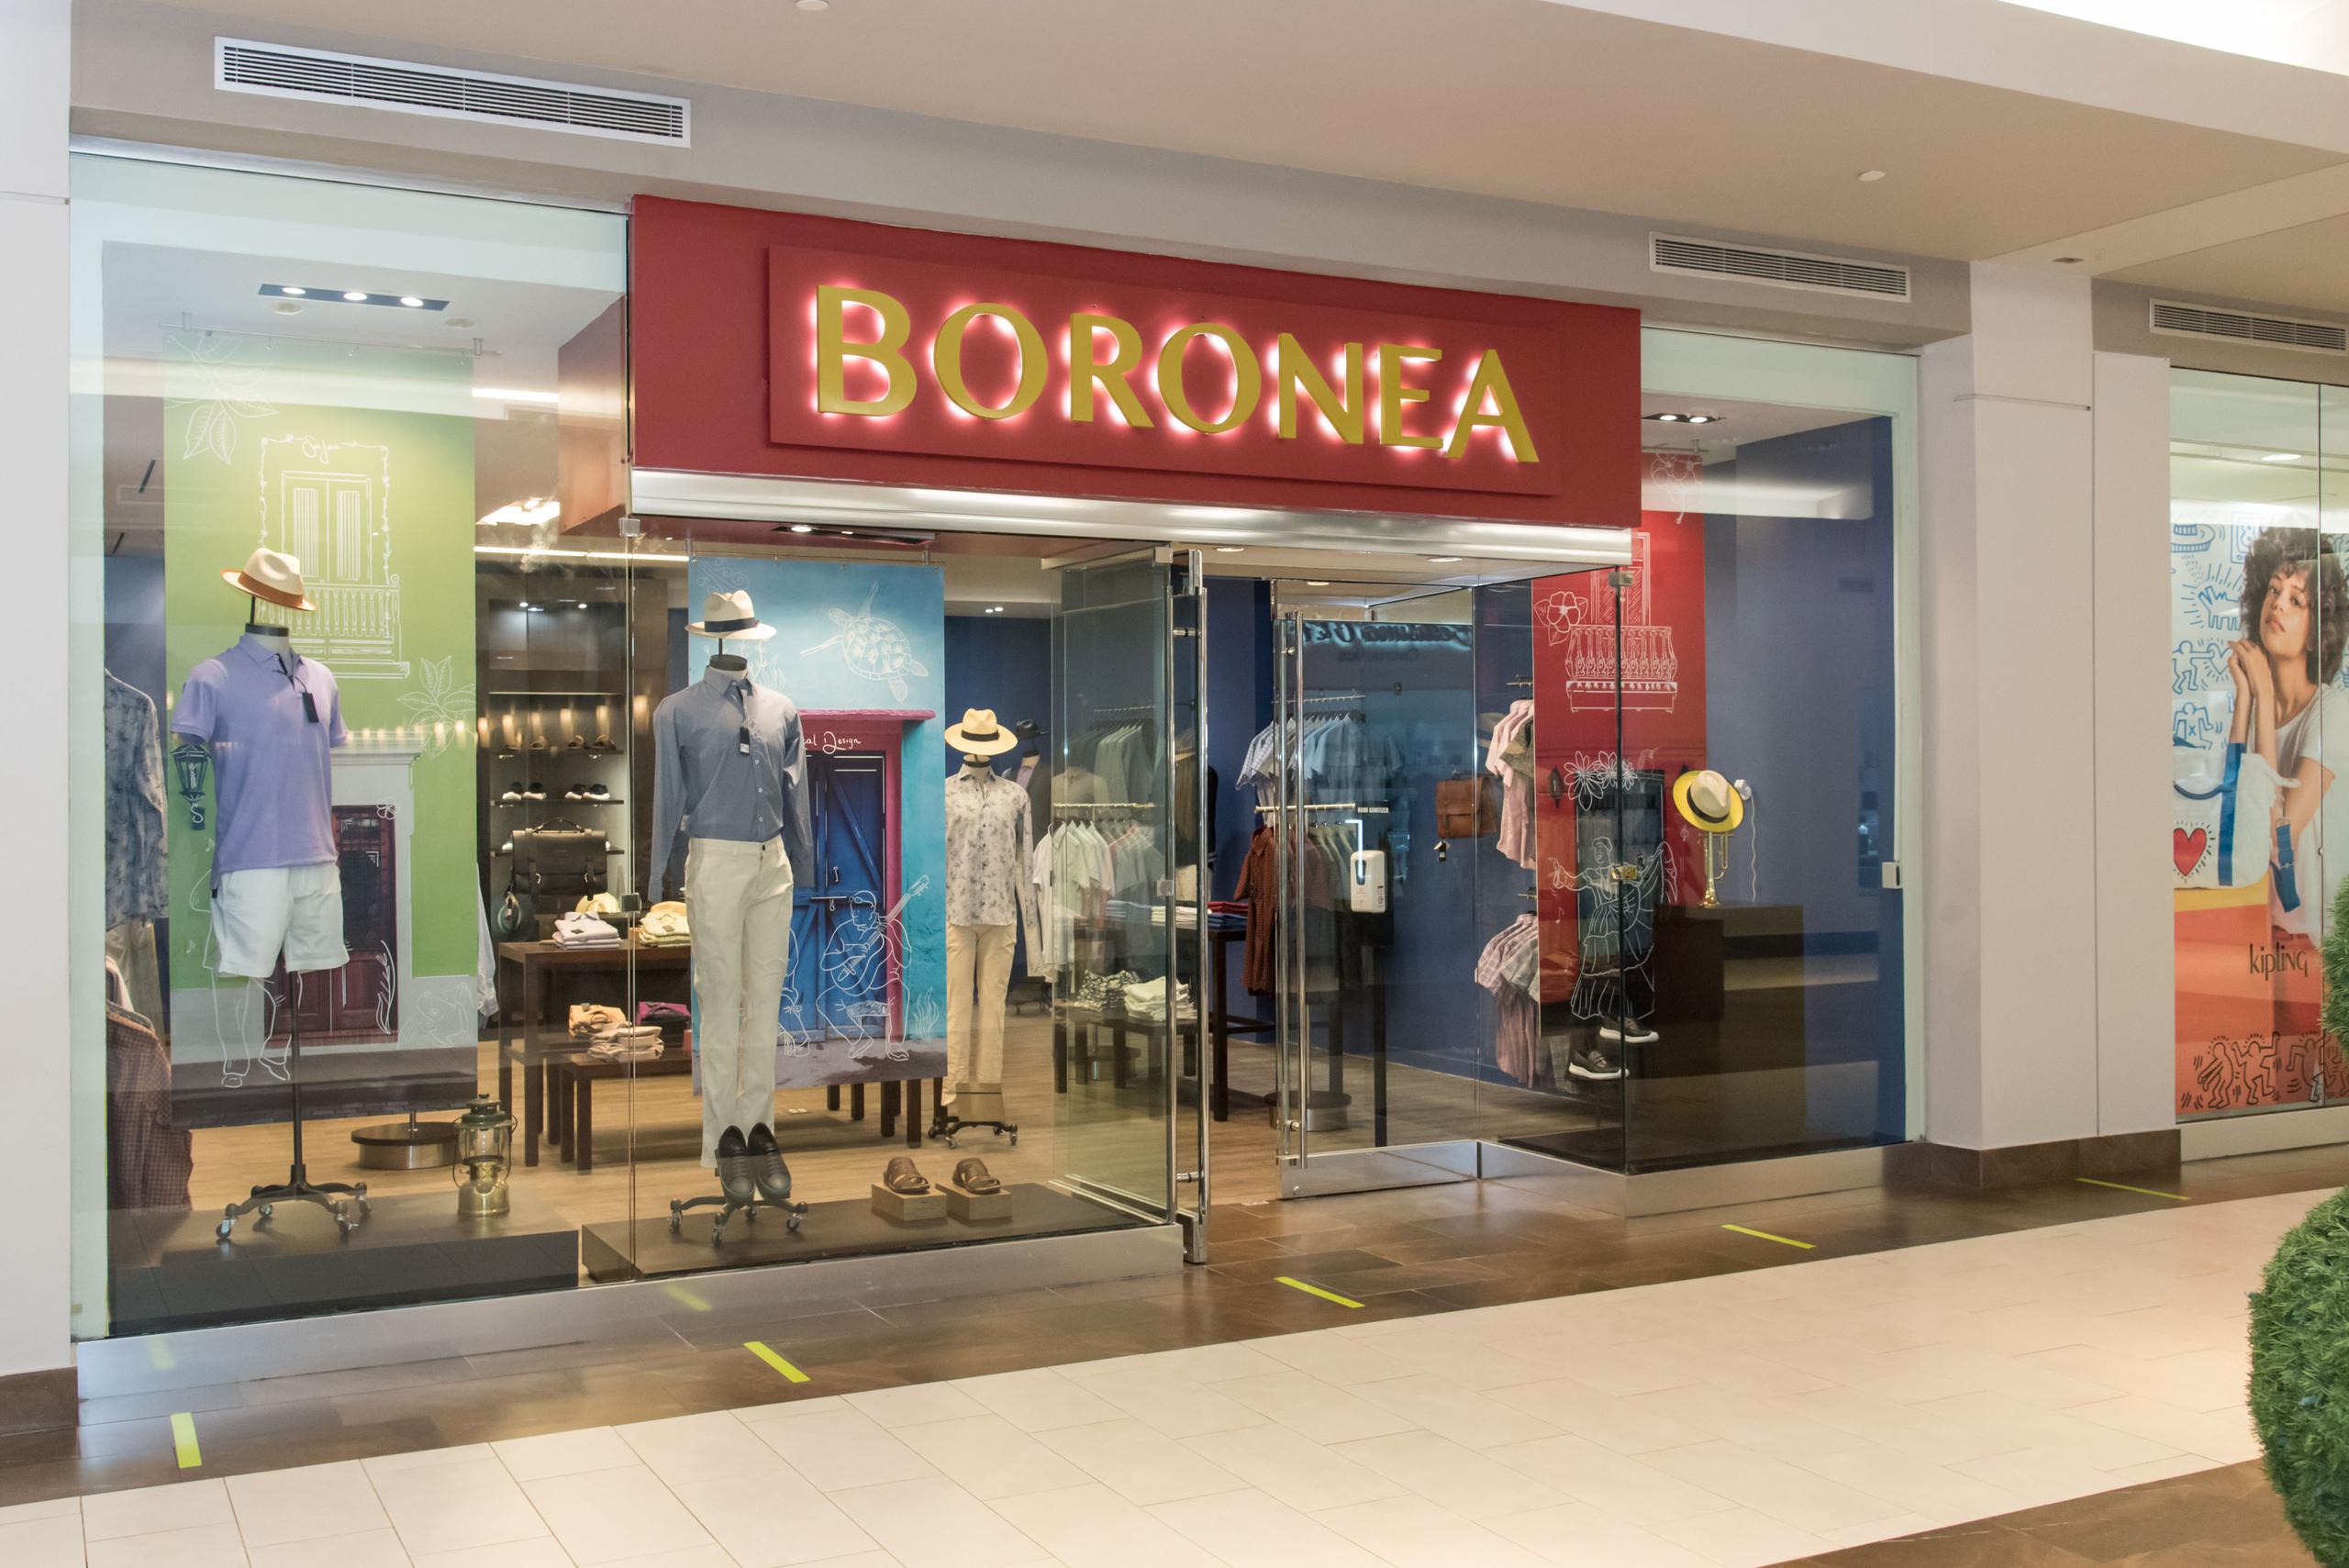 Boronea, Euromoda Sport, Resveralife y Roma son las tiendas que acaban de abrir sus puertas en este último trimestre del año en el centro comercial.